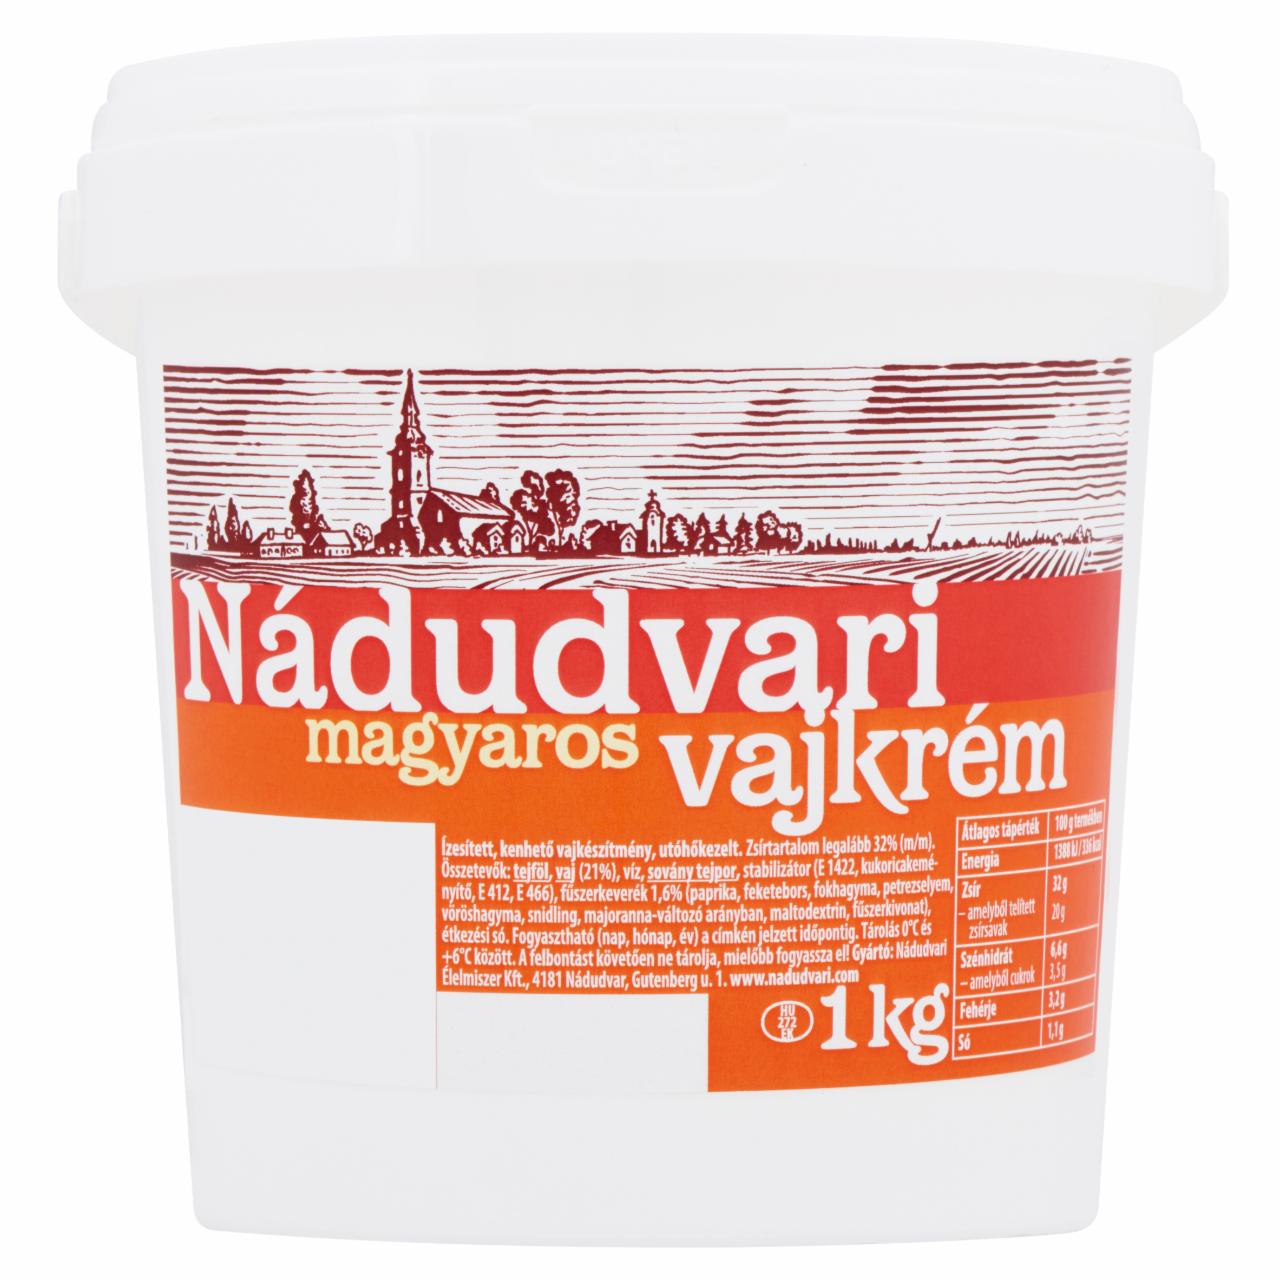 Képek - Nádudvari kenhető magyaros vajkrém 1 kg